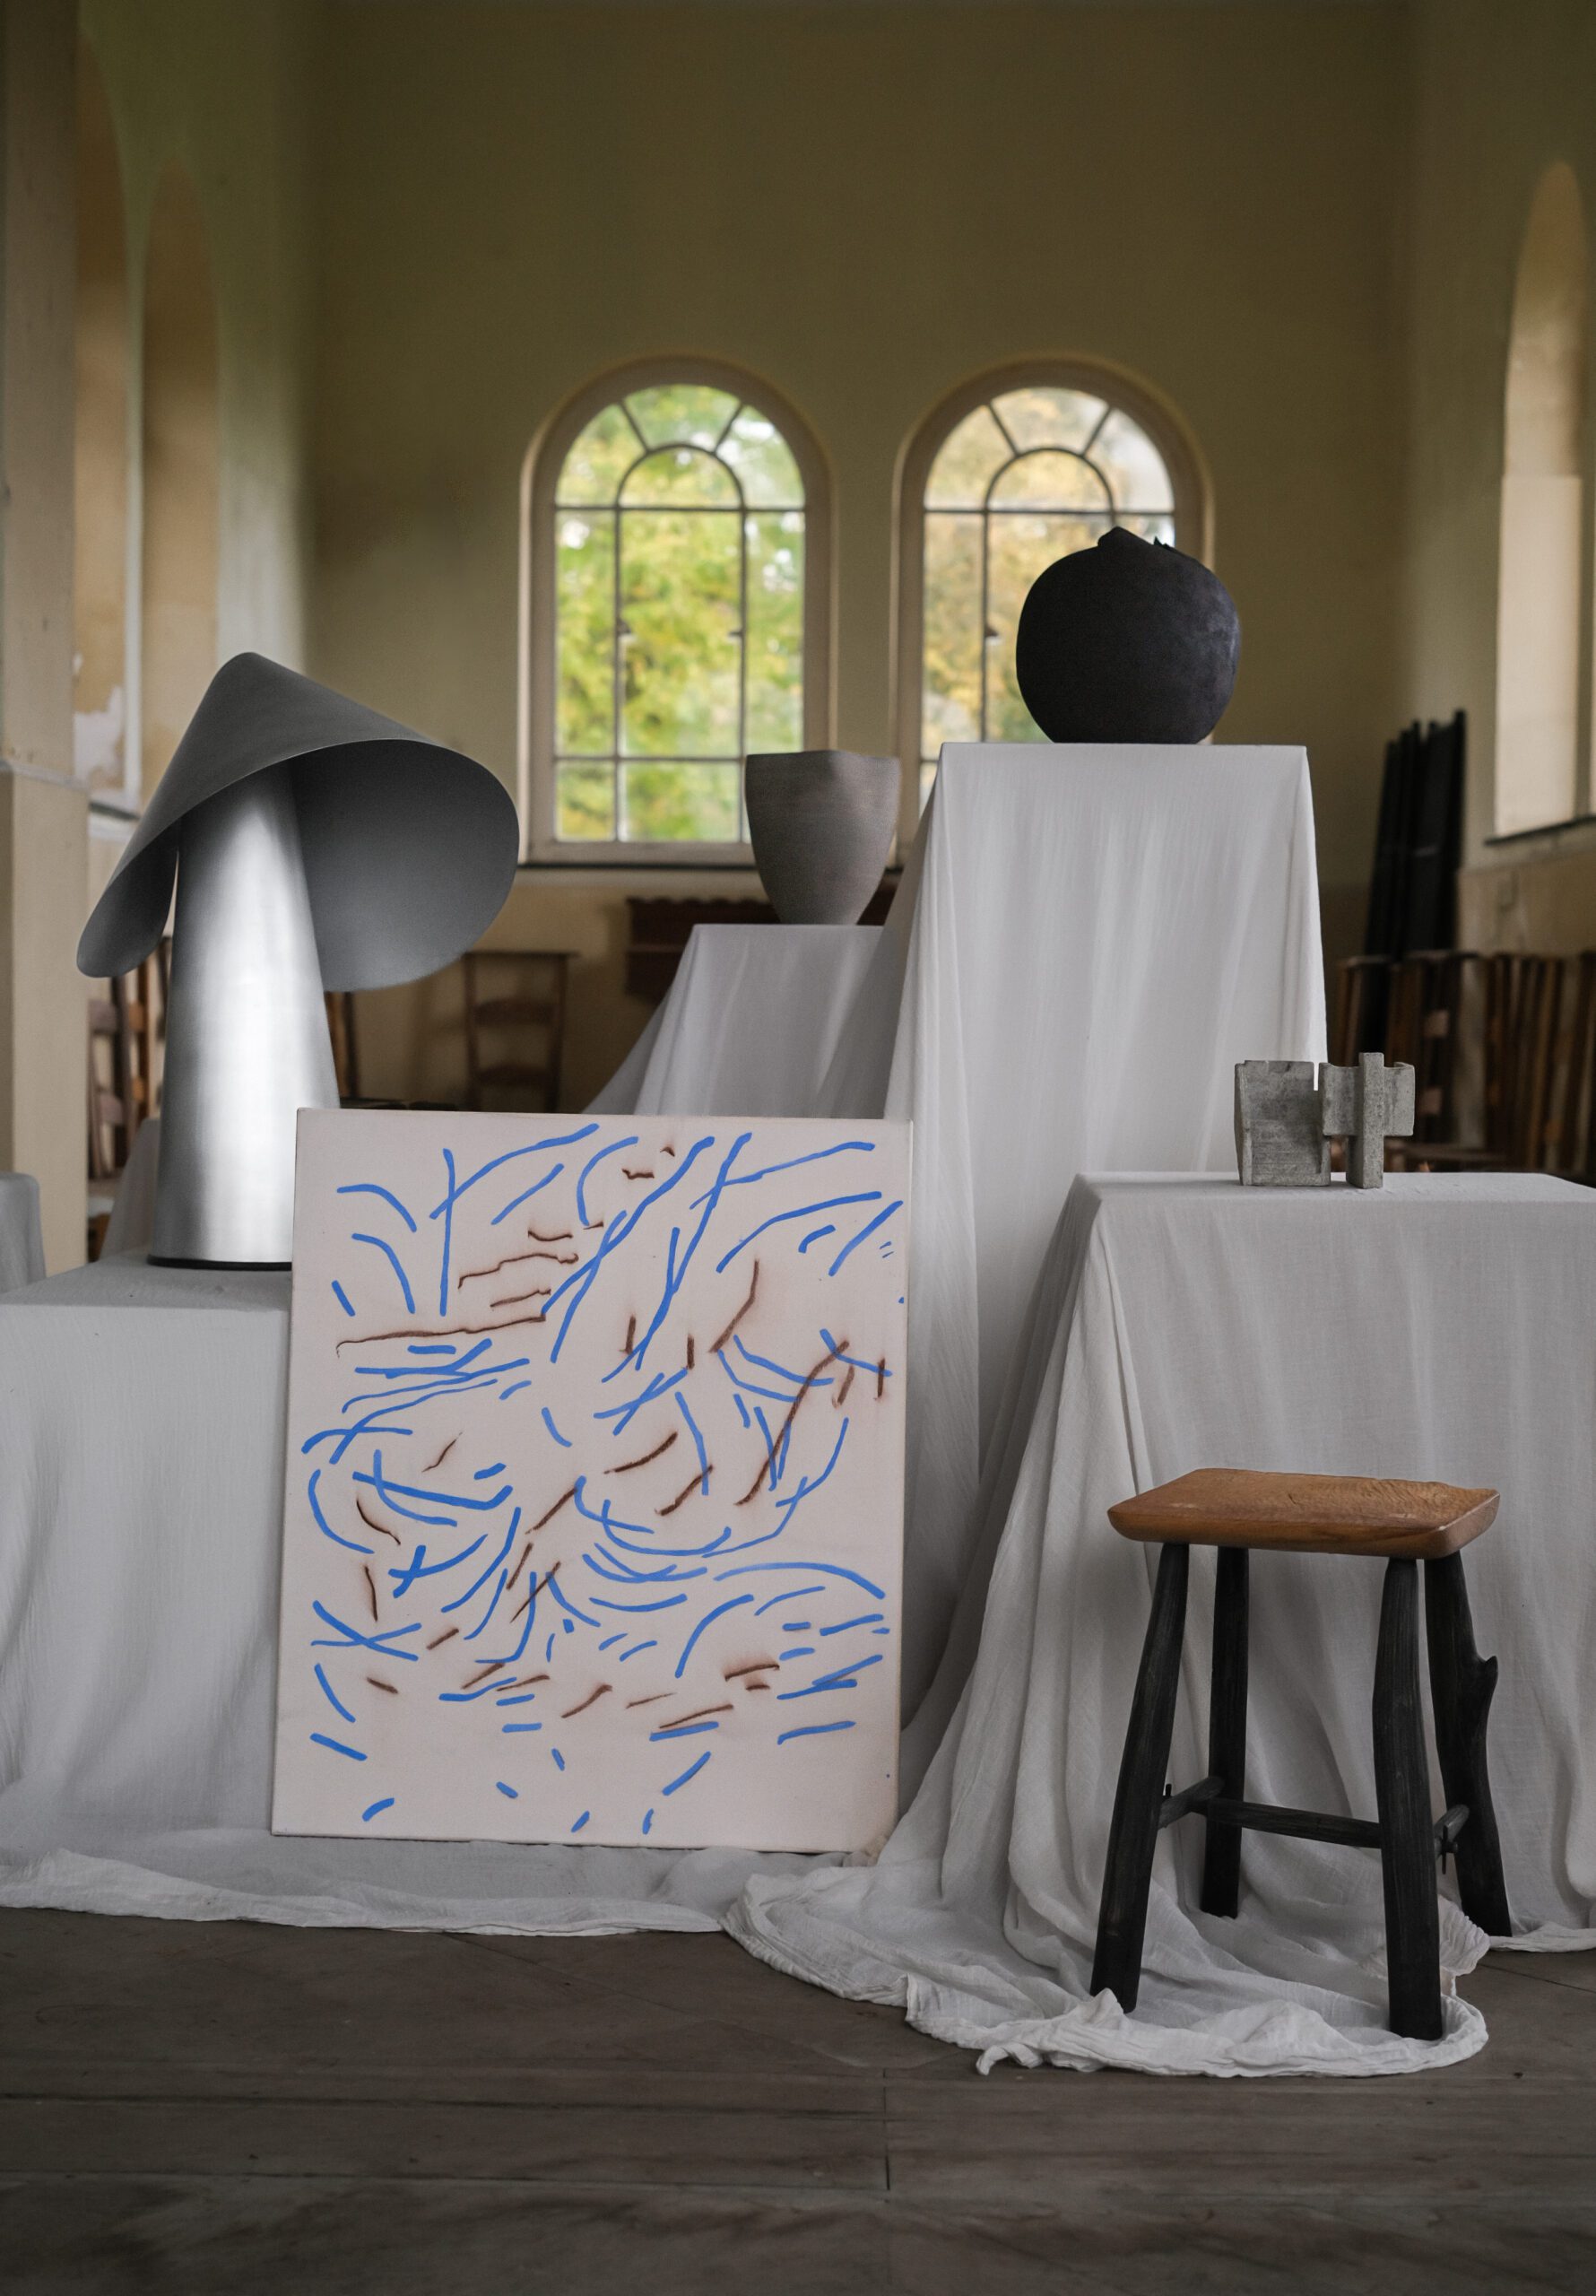 Sepa stool, Iskandar Lampe, Moritz Berg Painting